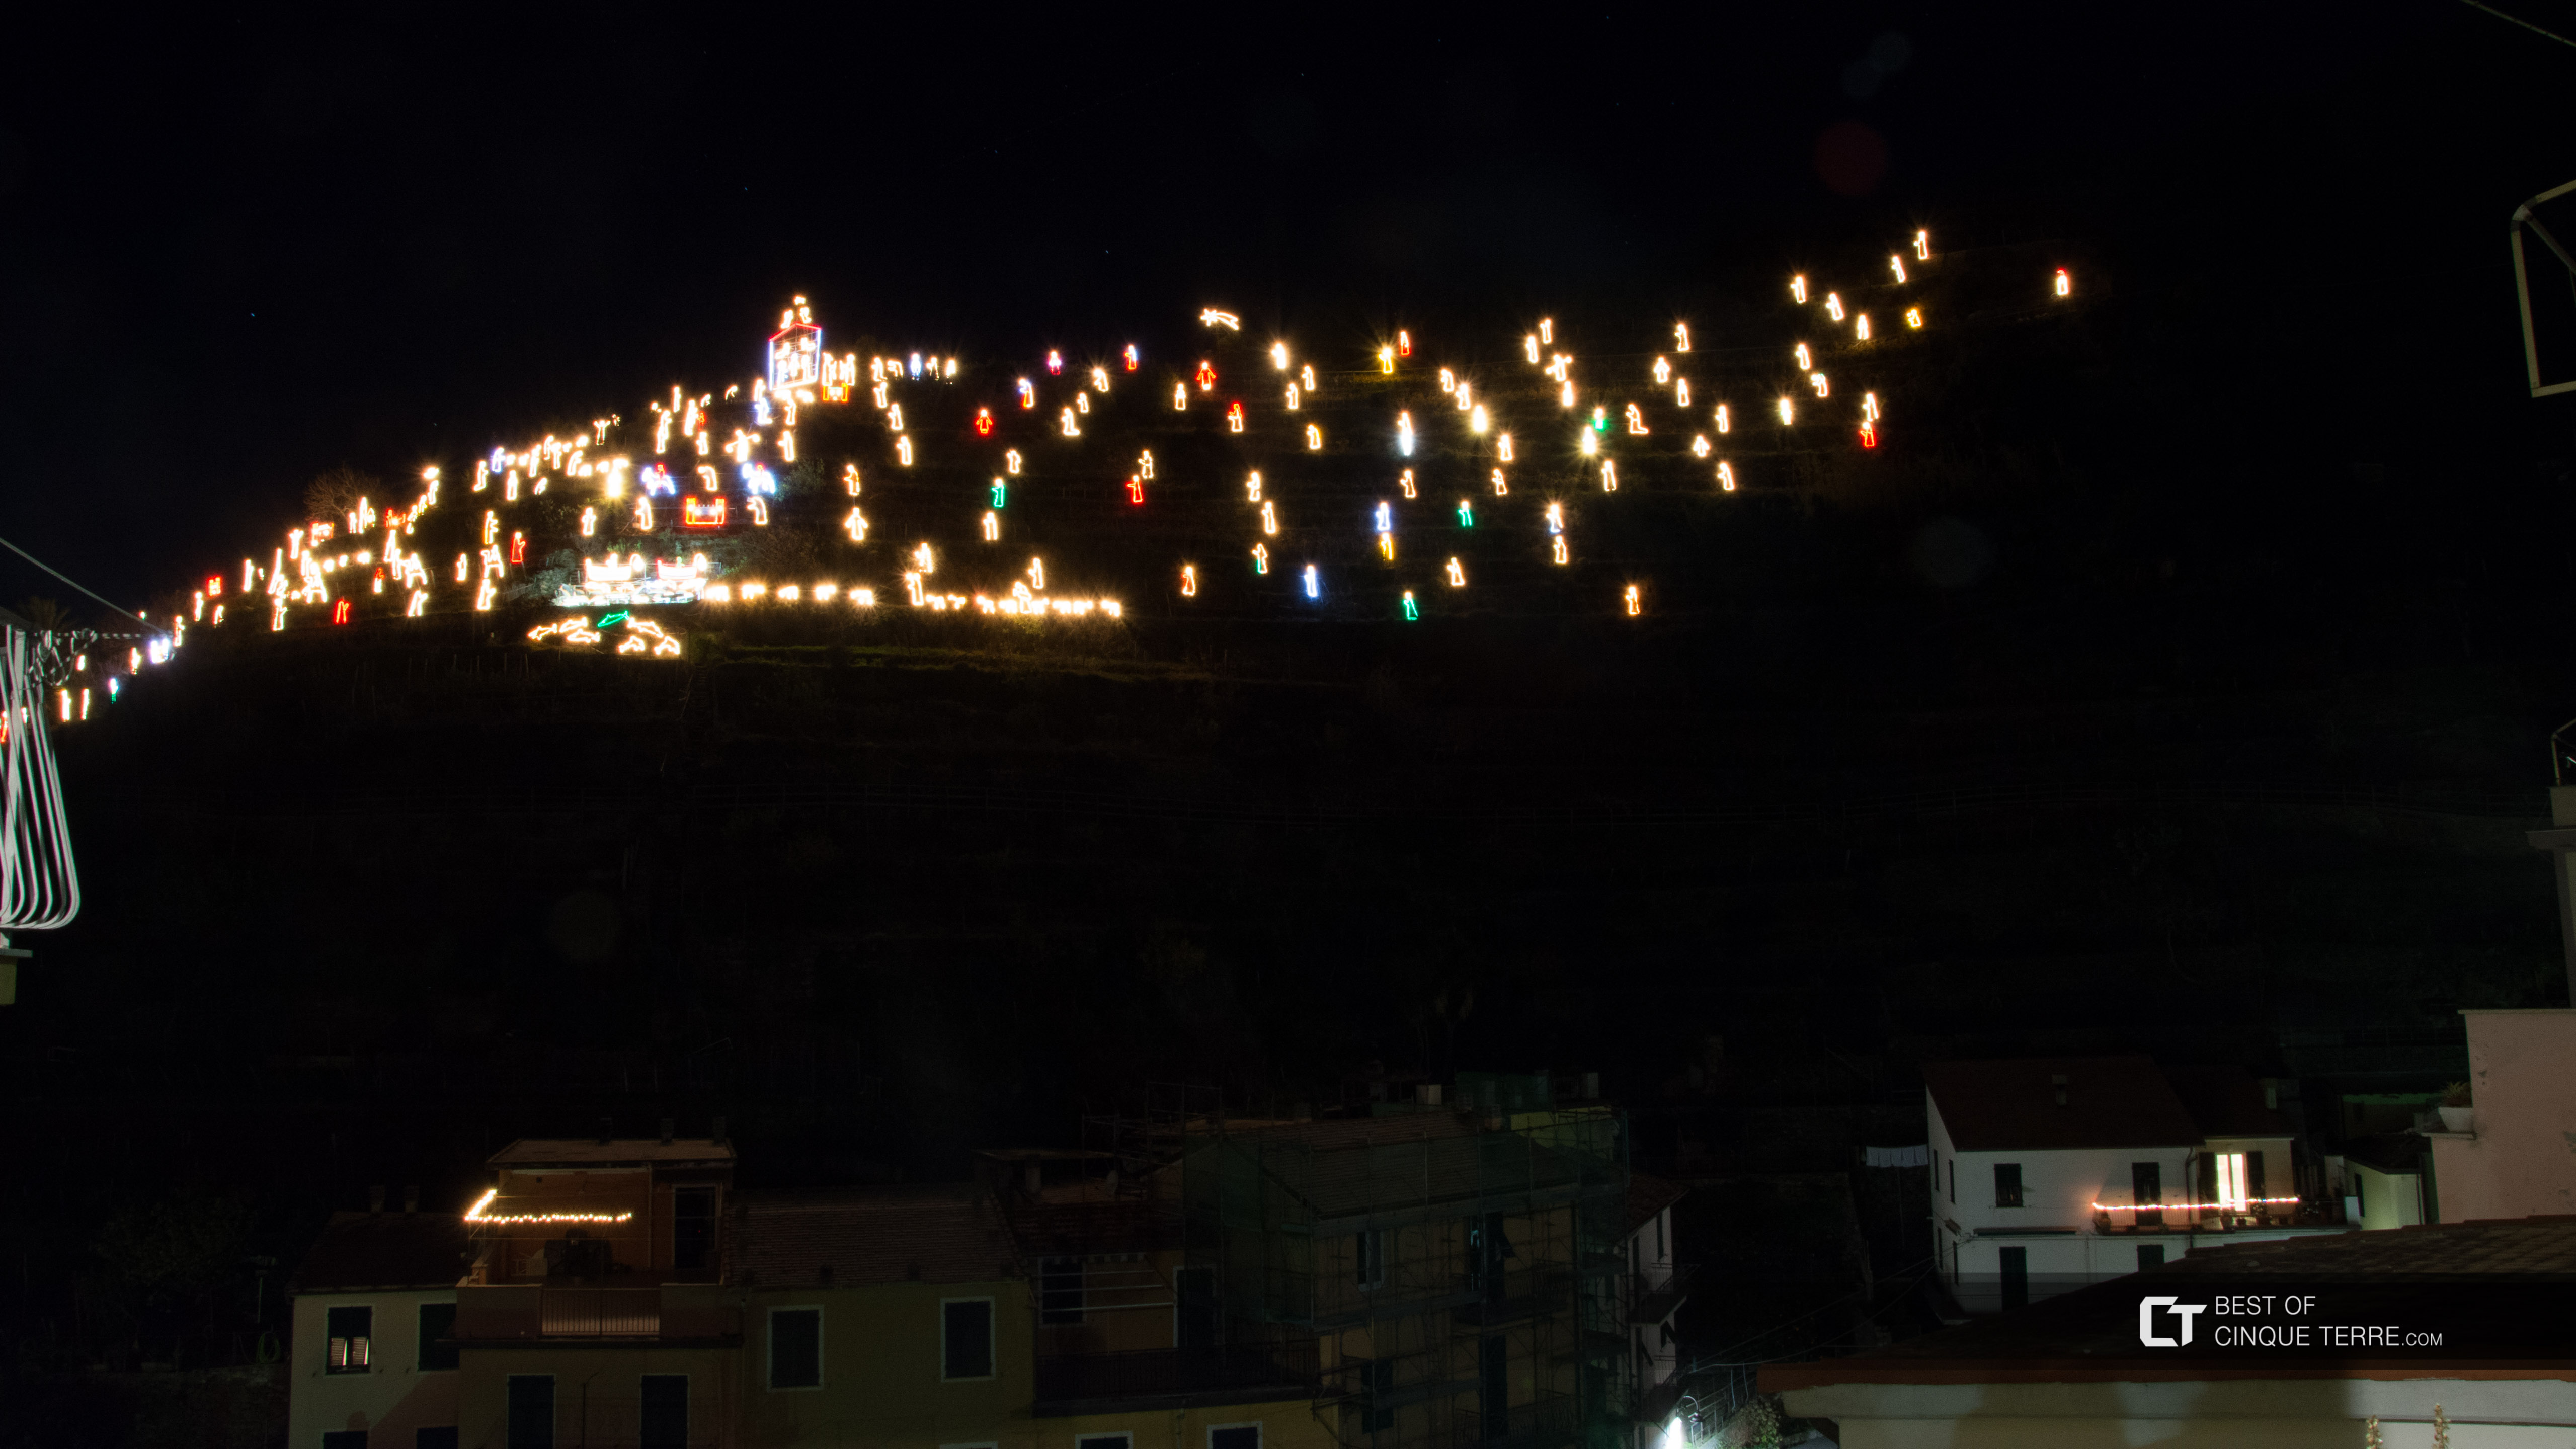 Szopka bożonarodzeniowa (Presepe), widok z centralnego placu miasta, Manarola, Cinque Terre, Włochy